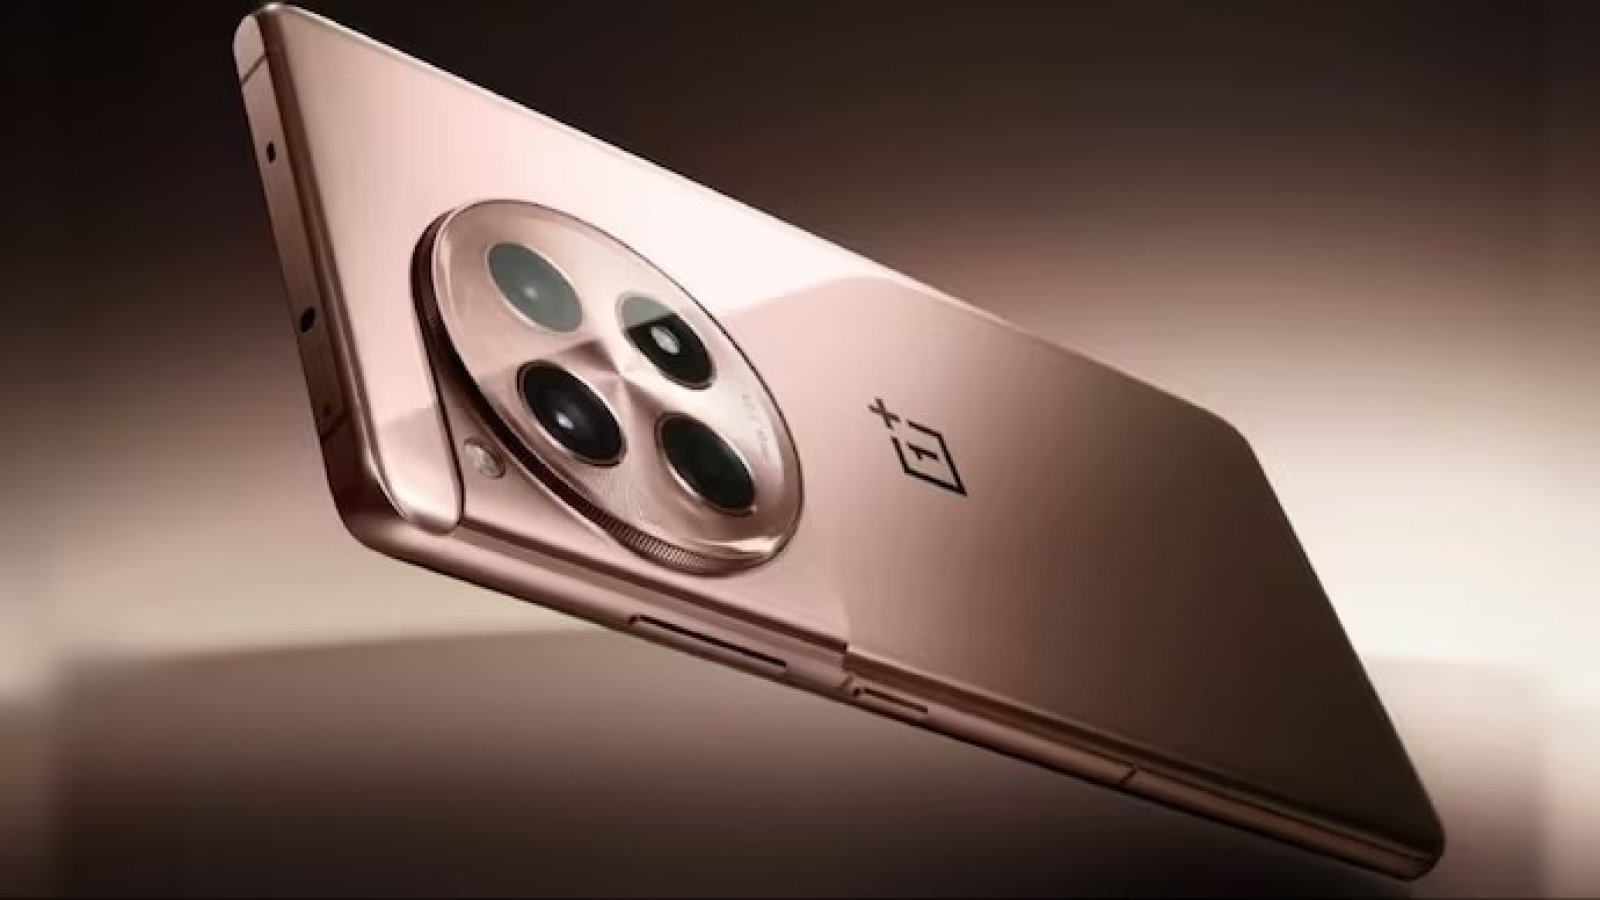 OnePlus12R : कम बजट में दमदार परफॉरमेंस - समीक्षा, कीमत, फीचर्स